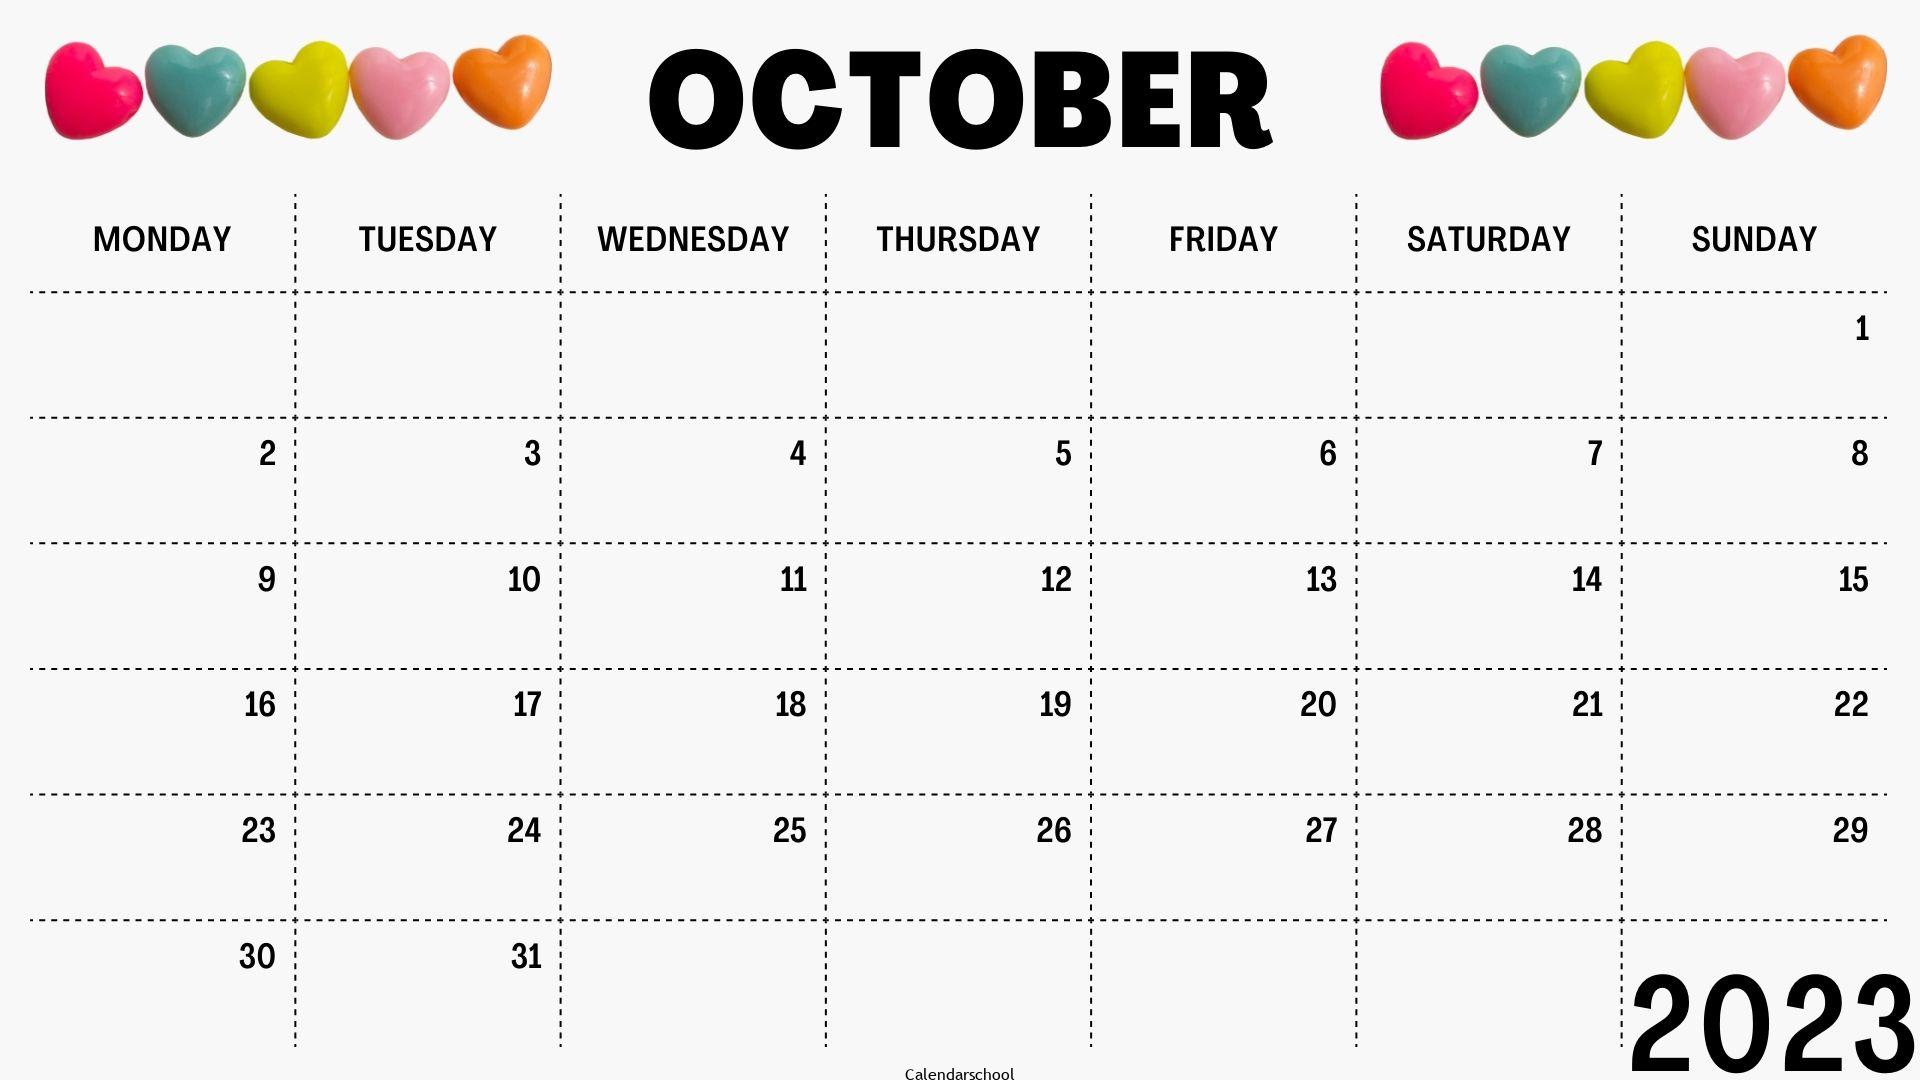 2023 October Calendar Activities